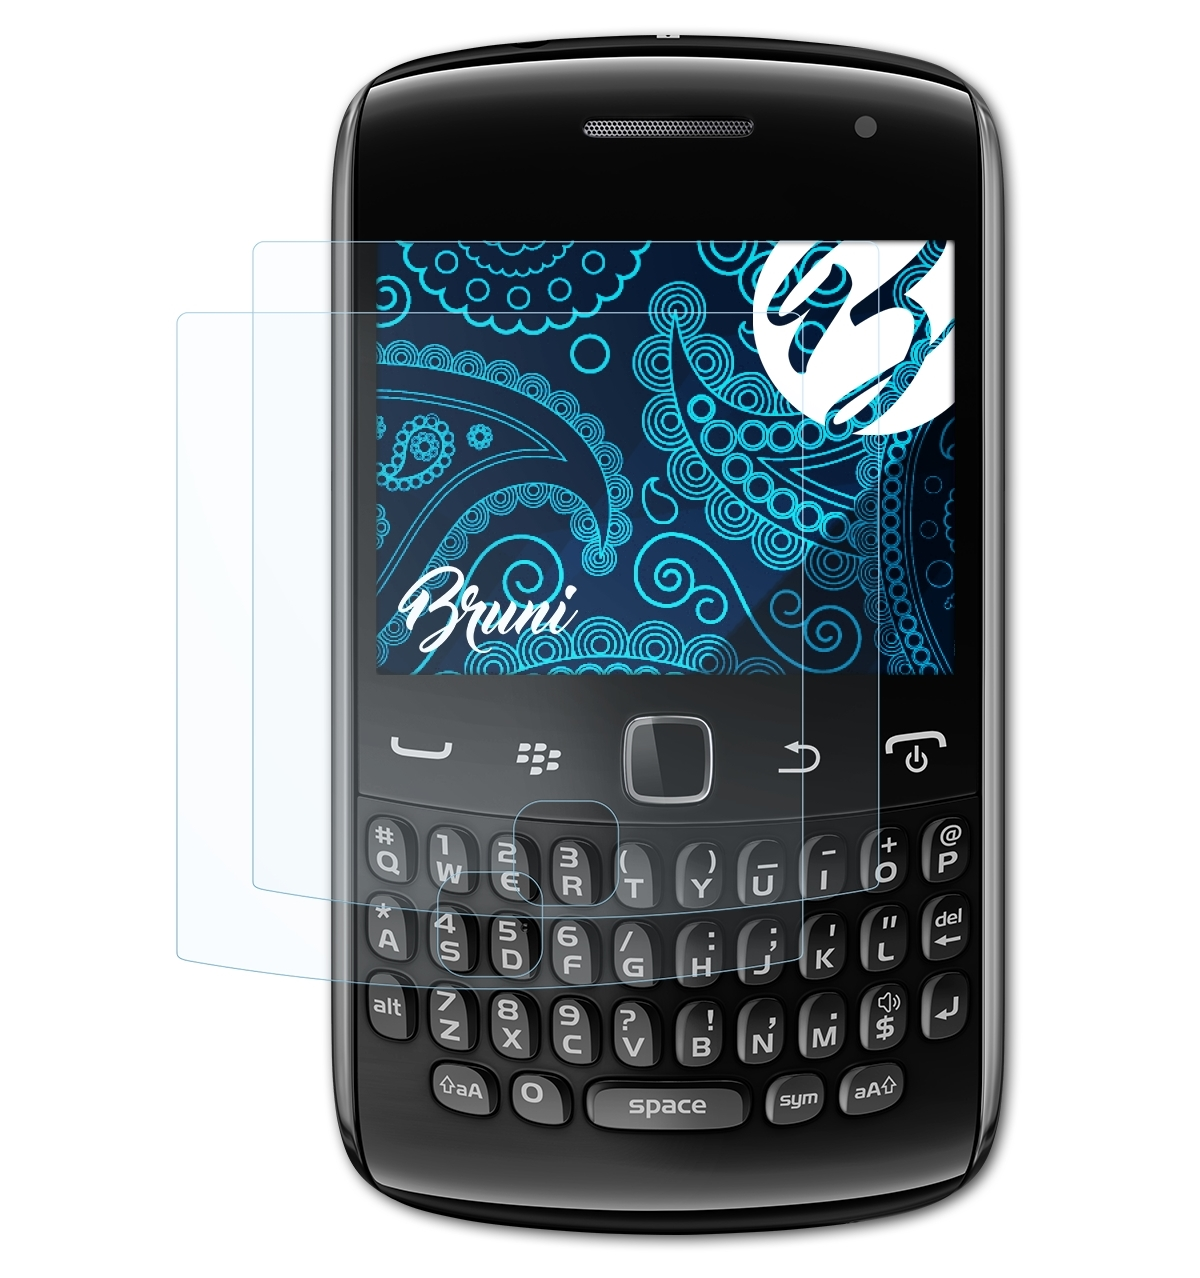 BRUNI 2x Basics-Clear Schutzfolie(für 9360) Blackberry Curve